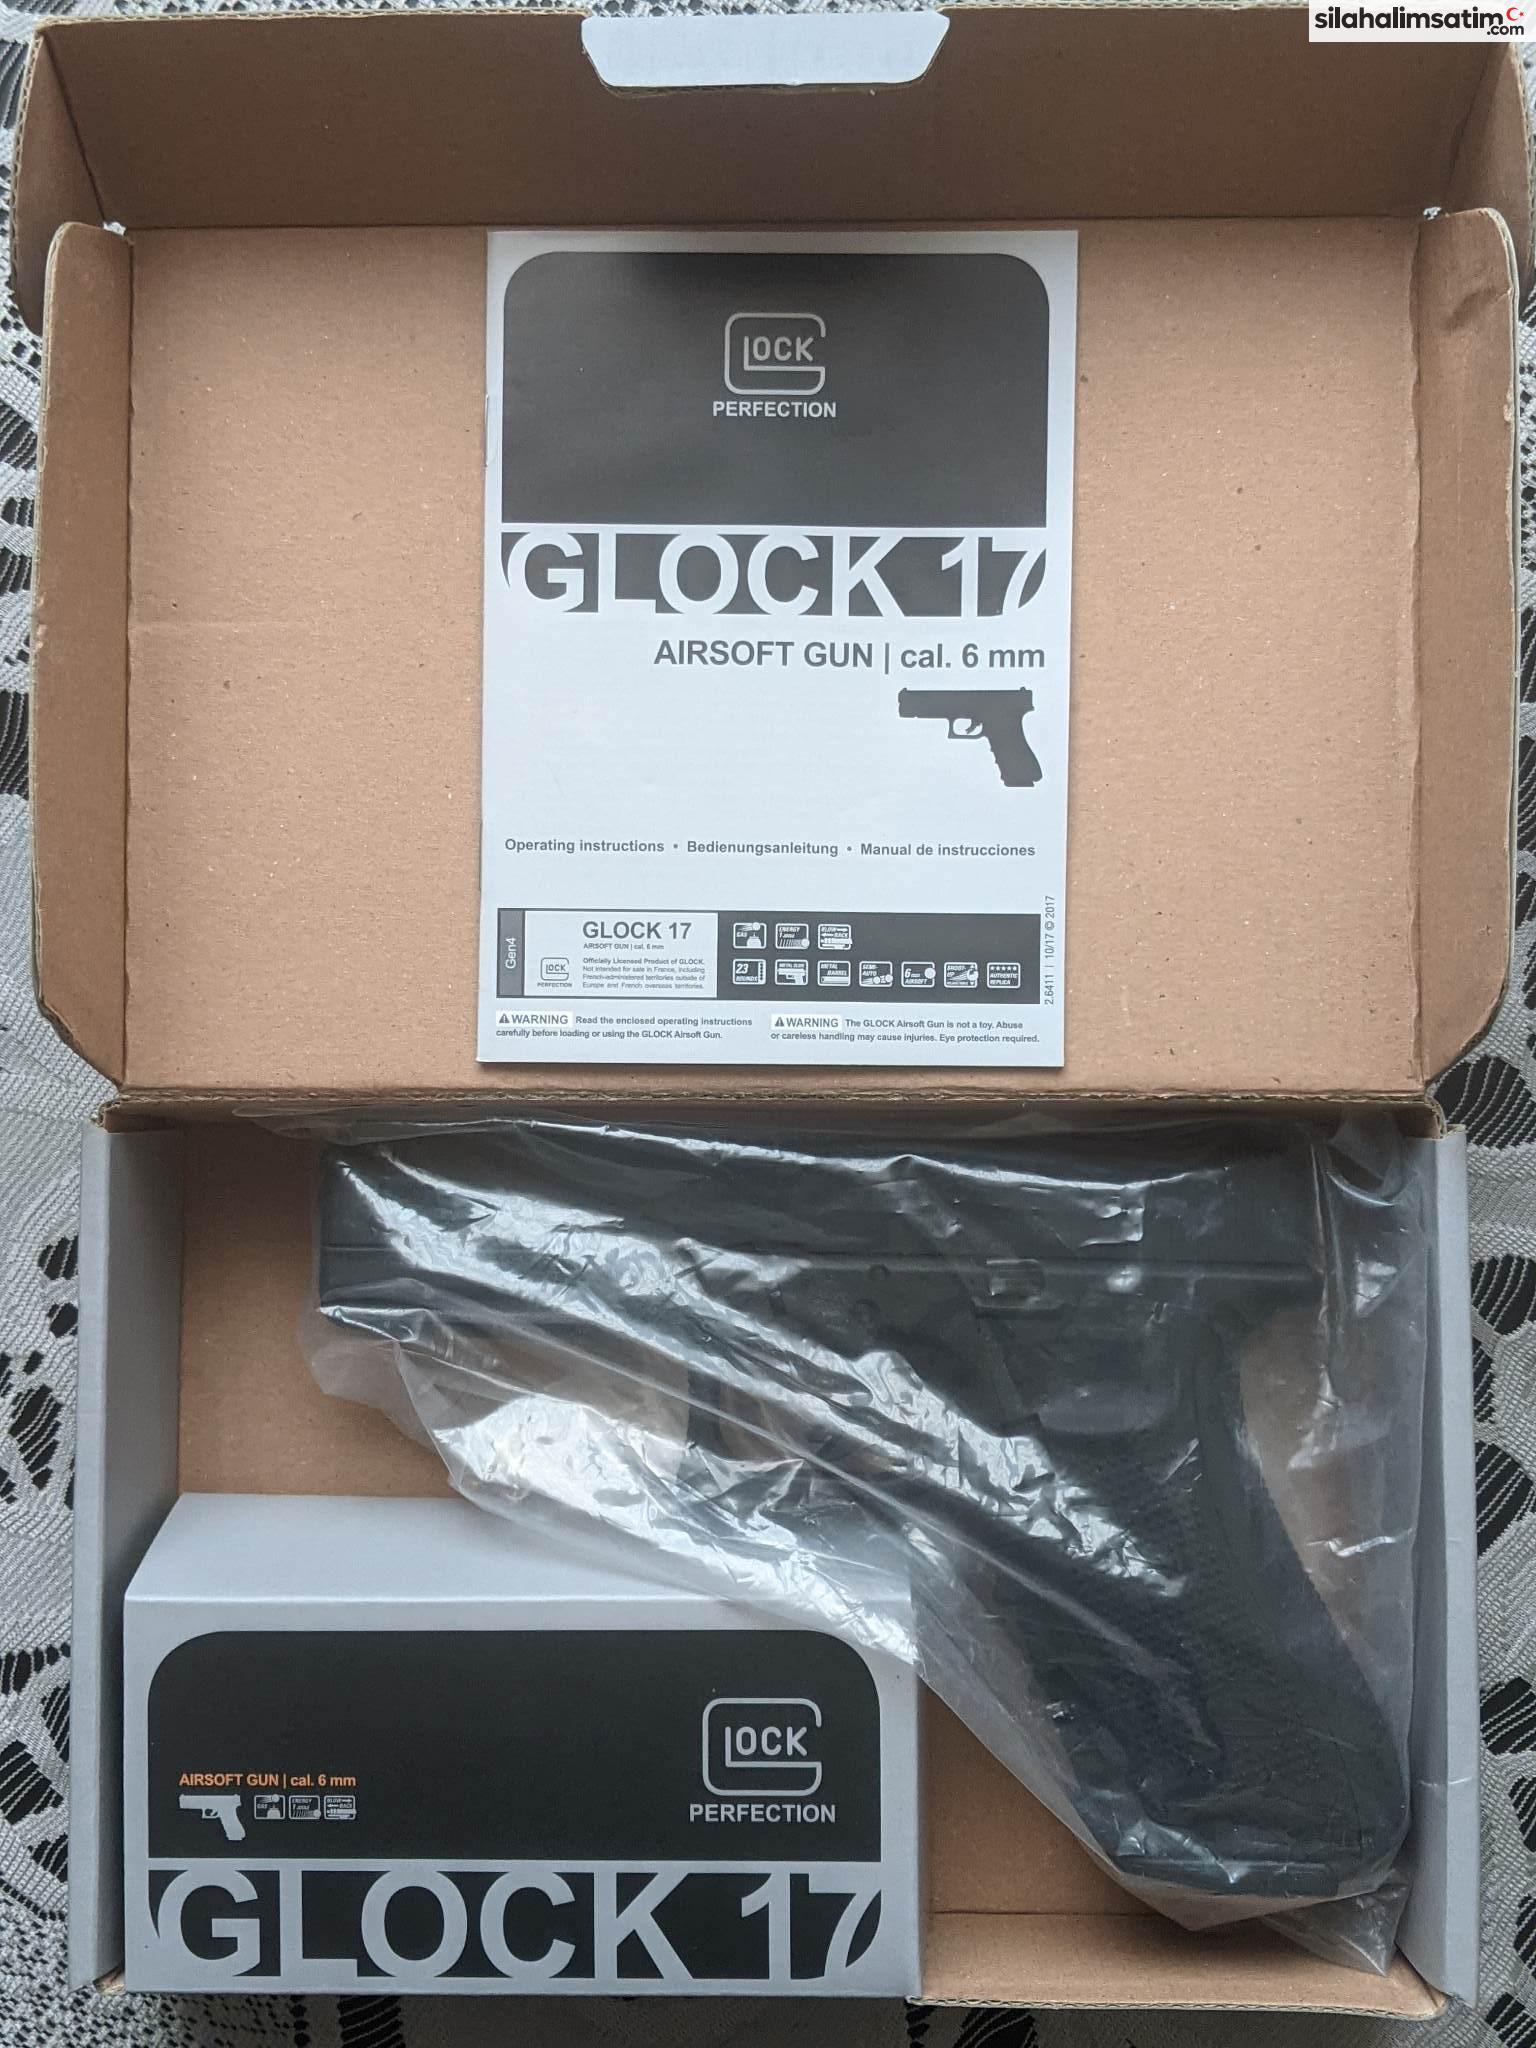 Umarex Glock 17 Gen 4